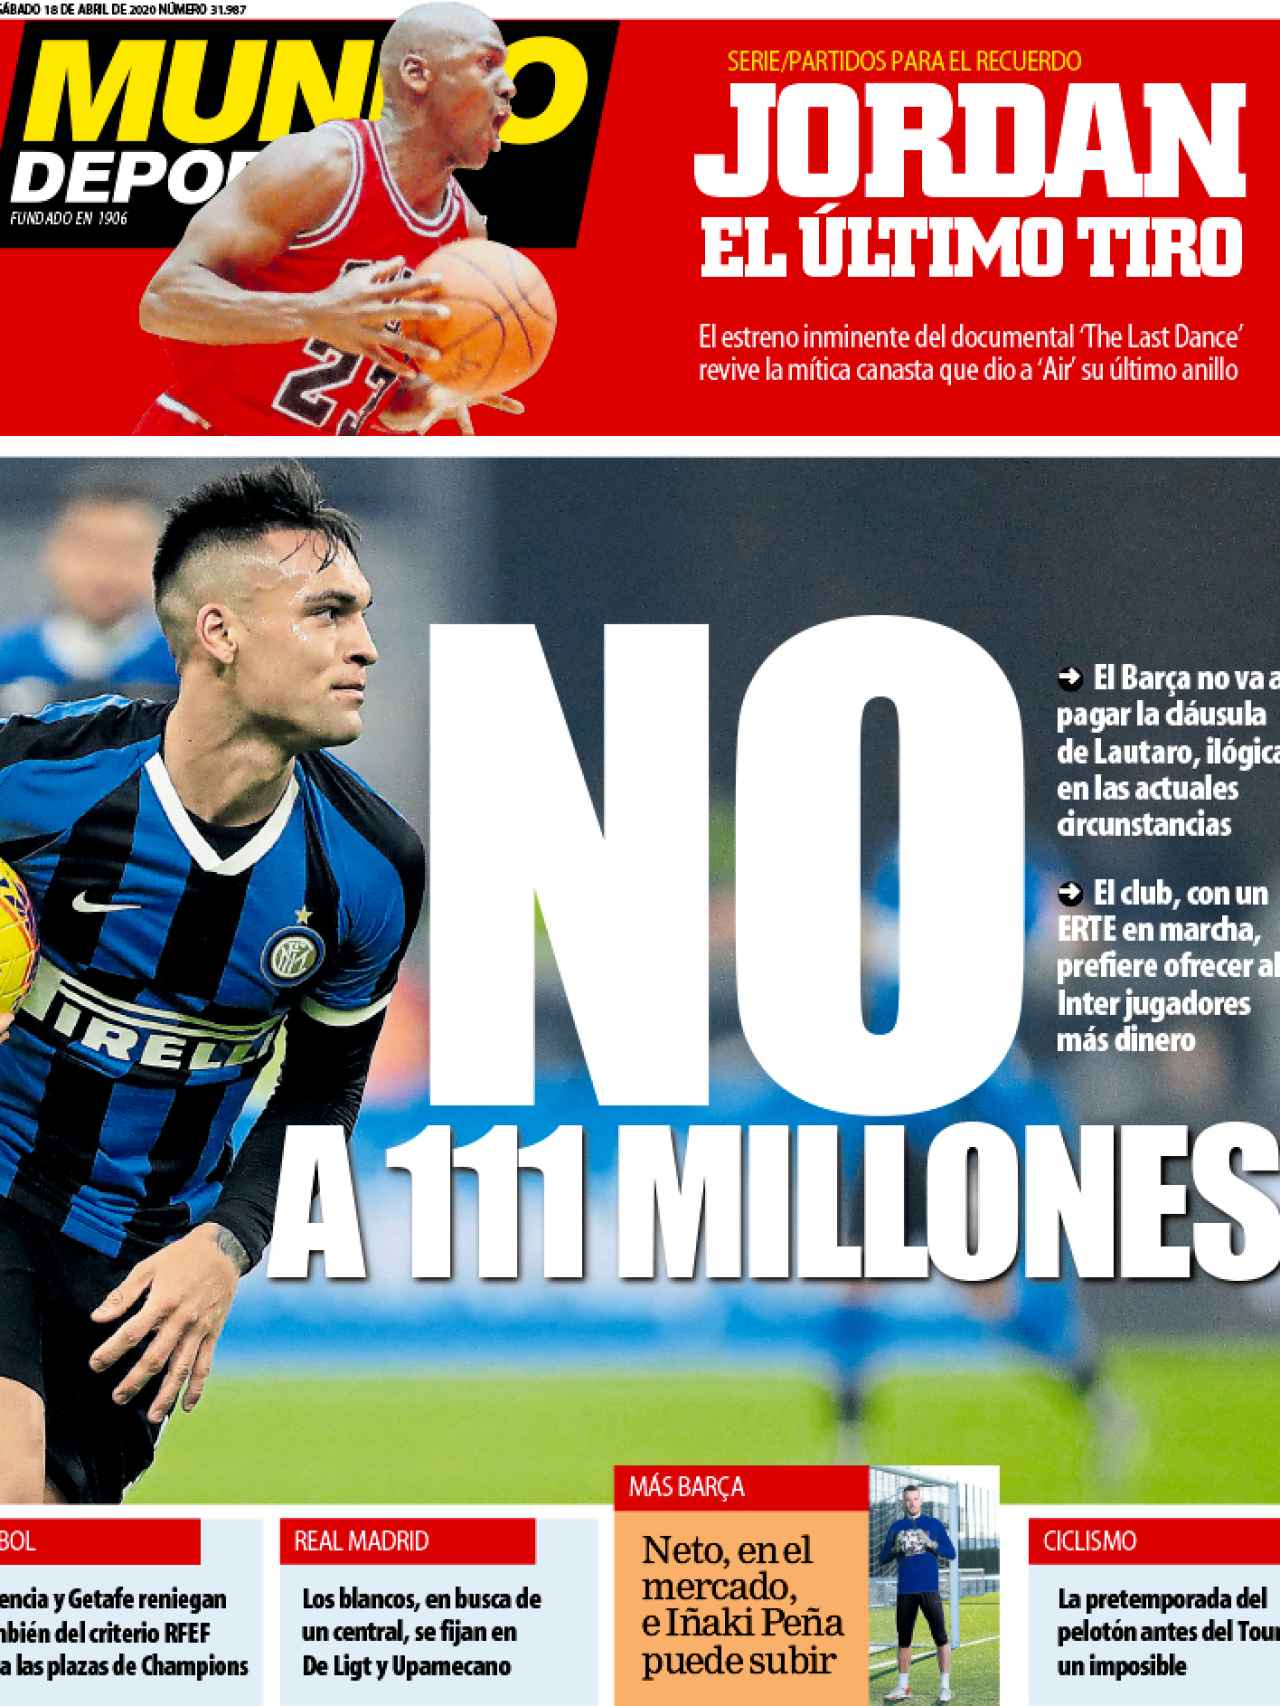 La portada del diario Mundo Deportivo (18/04/2020)